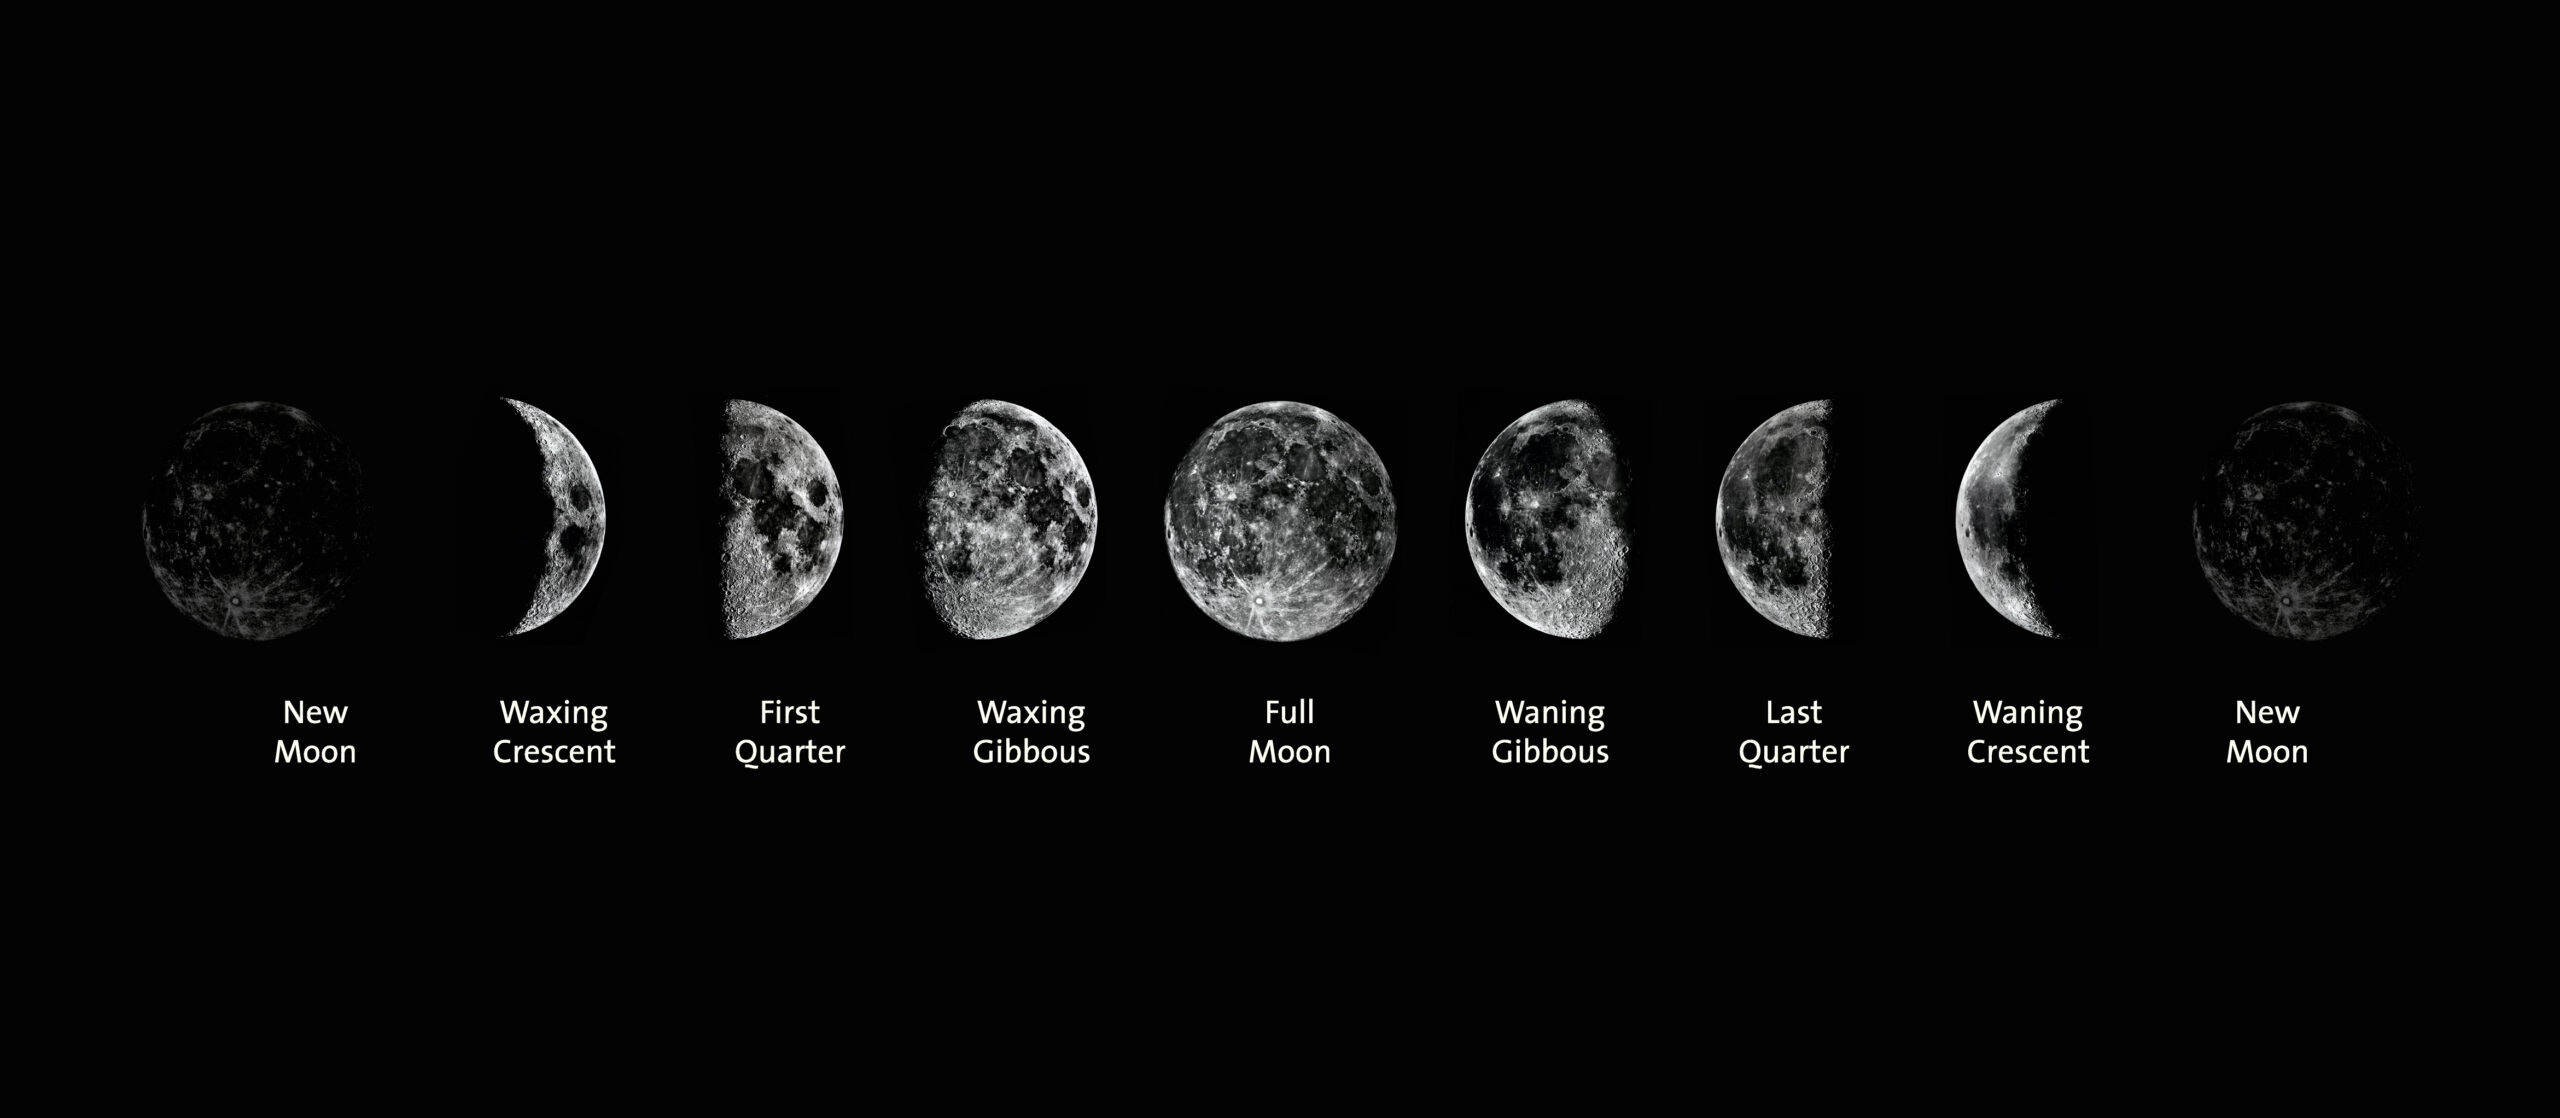 <ul><li><p>new moon </p></li><li><p>waxing crescent </p></li><li><p>first quarter </p></li><li><p>waxing gibbous </p></li><li><p>full moon </p></li><li><p>wanning gibbous </p></li><li><p>last quarter </p></li><li><p>waning crescent </p></li><li><p>new moon </p></li></ul>